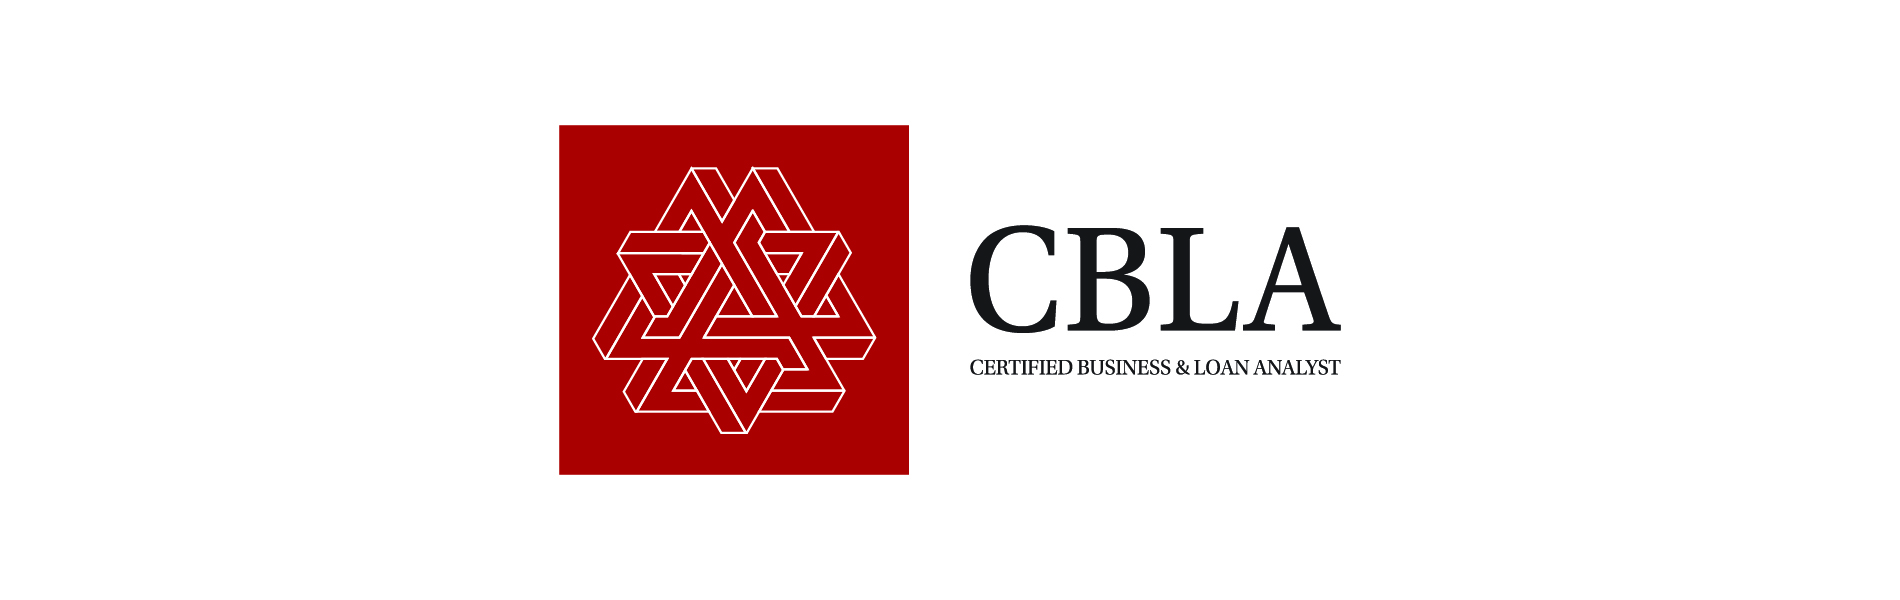 CBLA təlimi, CBLA sertifikatı, CBLA kursları